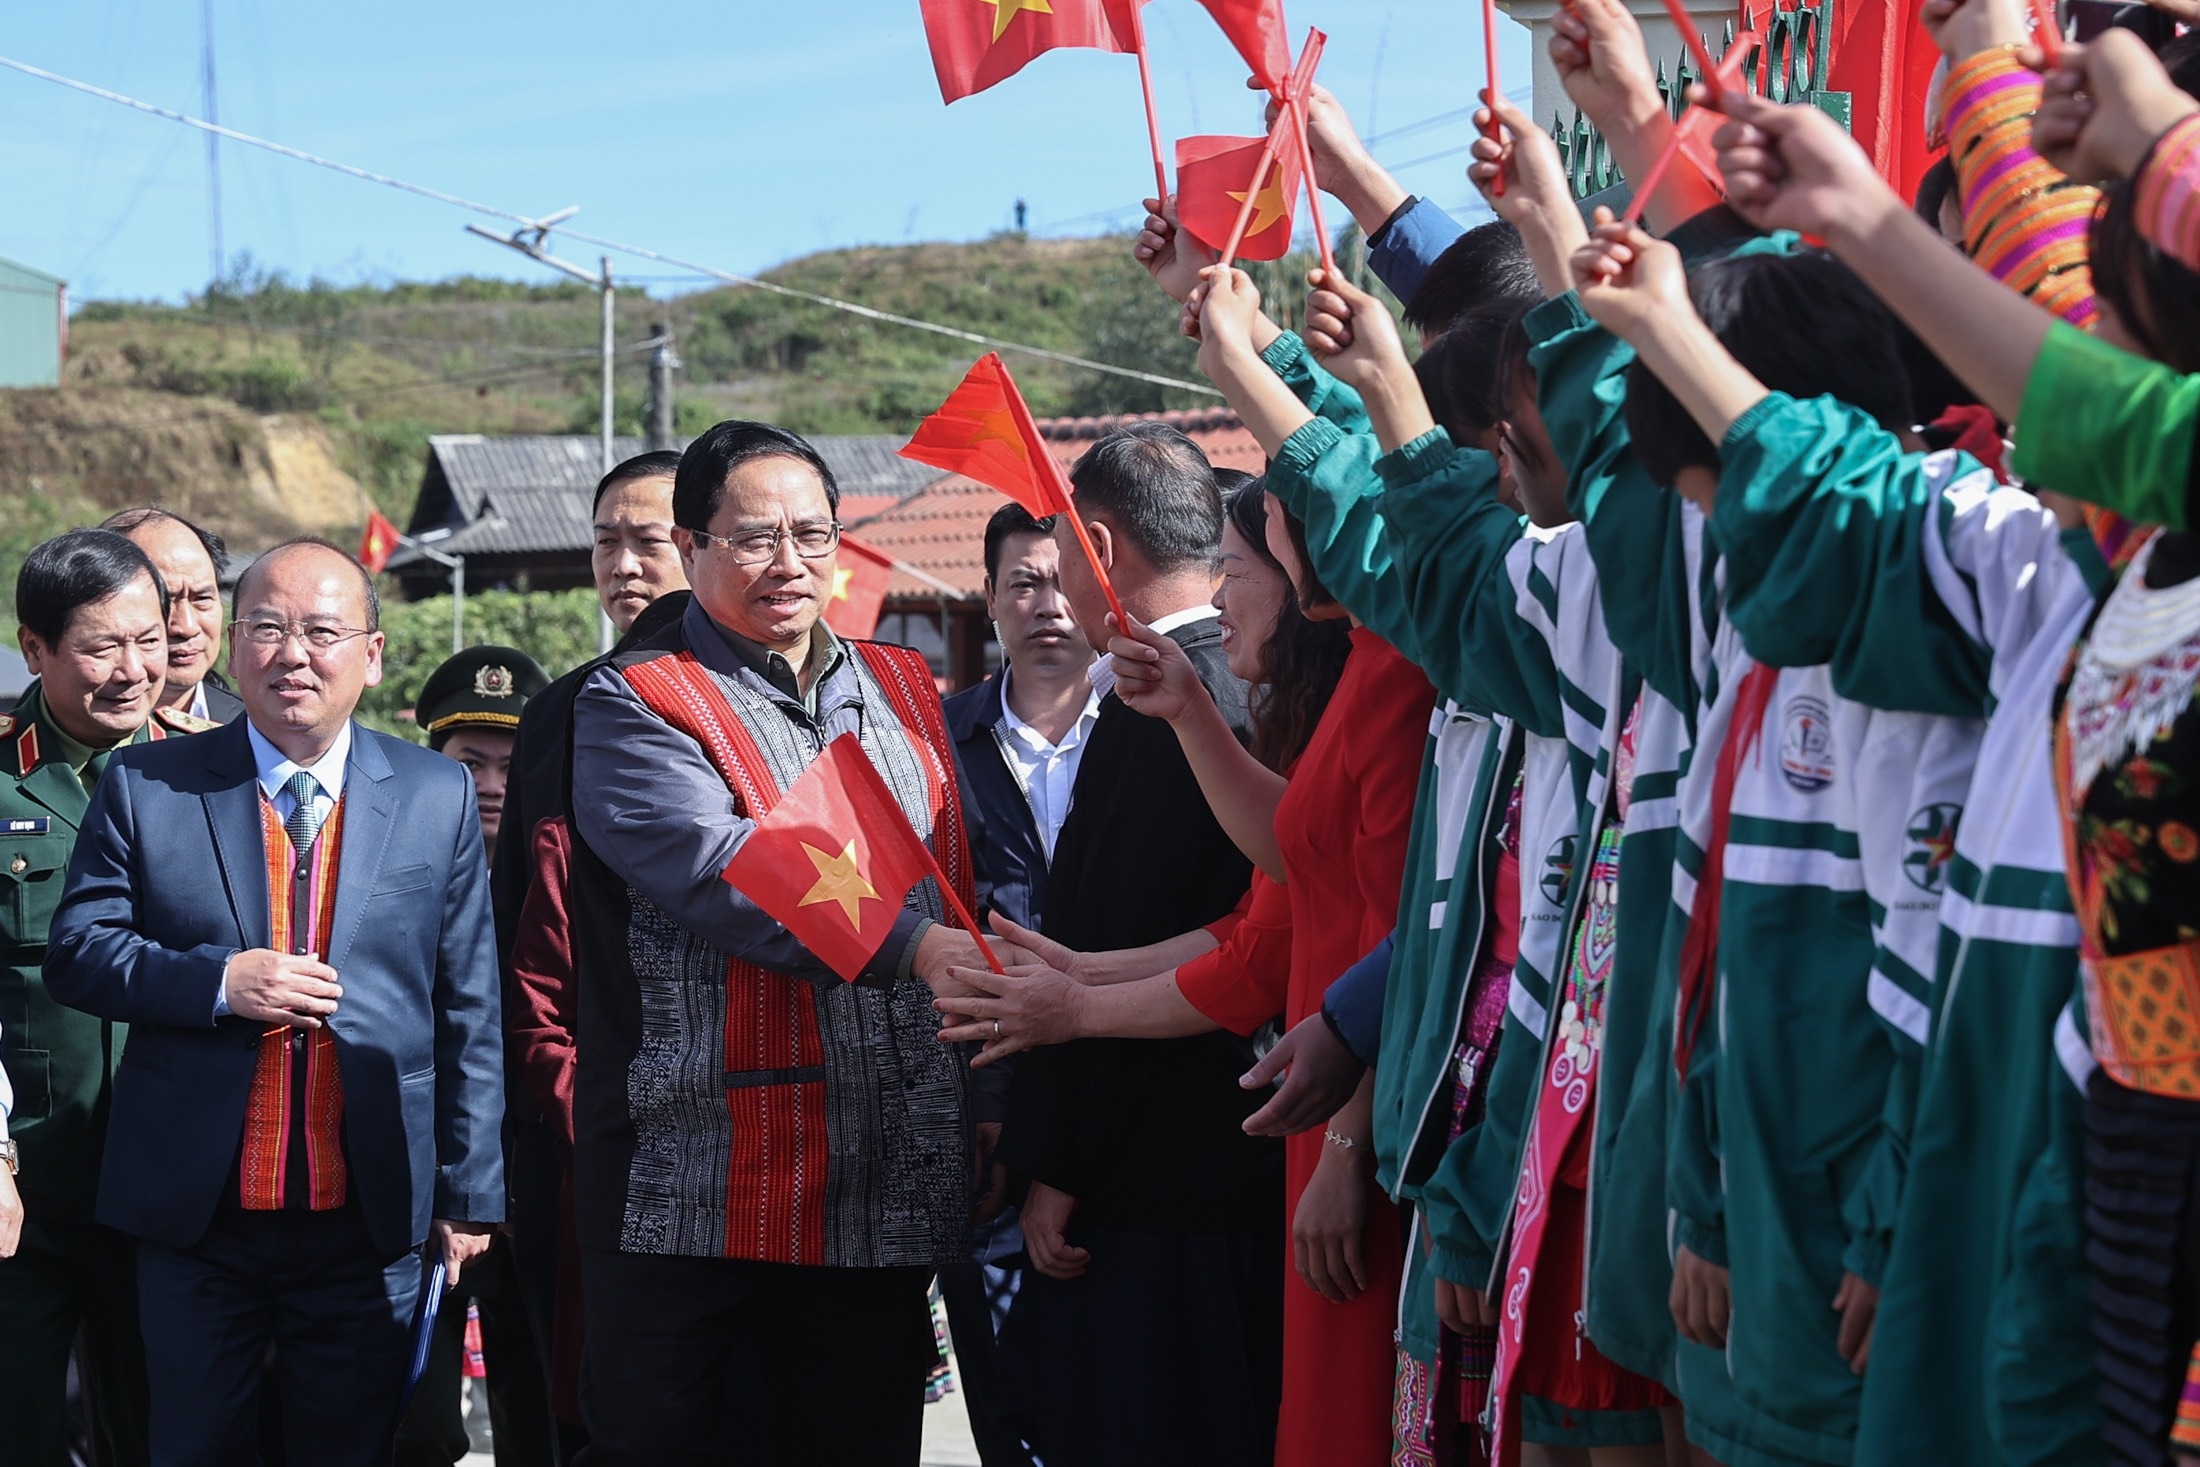 Thủ tướng nắm tay, nhảy cùng đồng bào dân tộc trong ngày hội Đại đoàn kết - 2